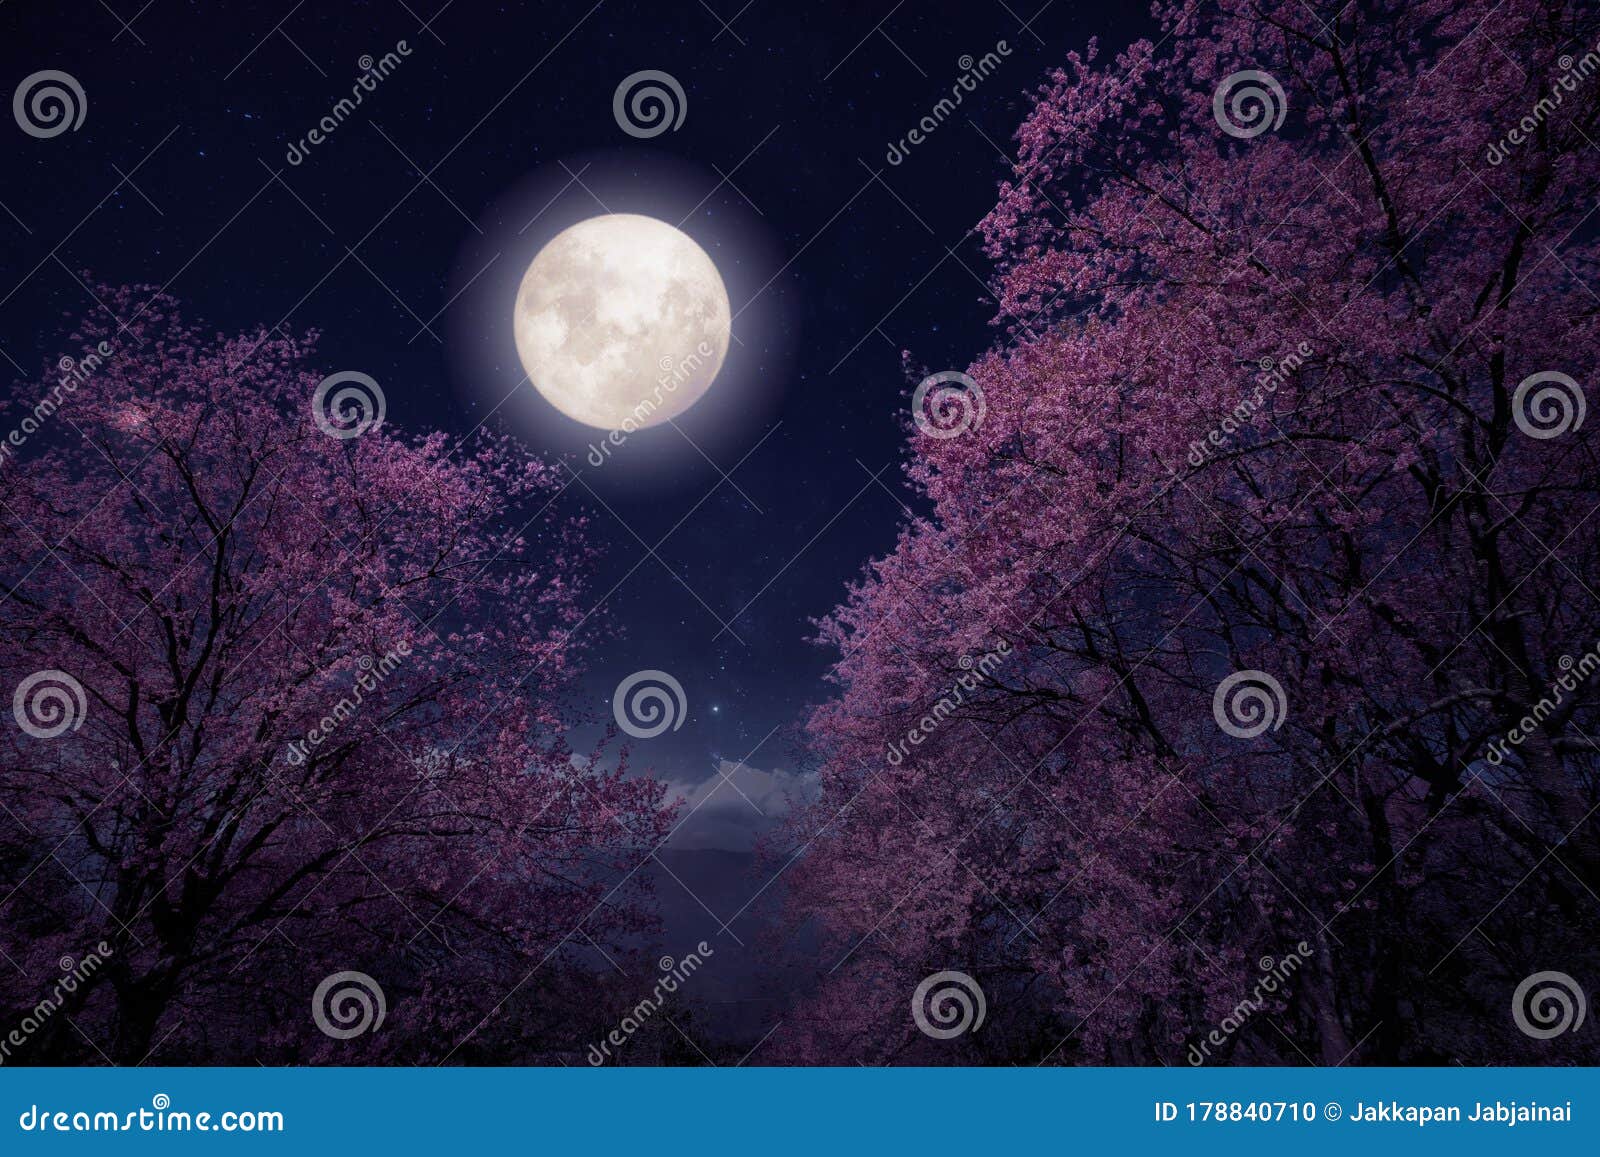 beautiful cherry blossom sakura flowers in night skies with full moon